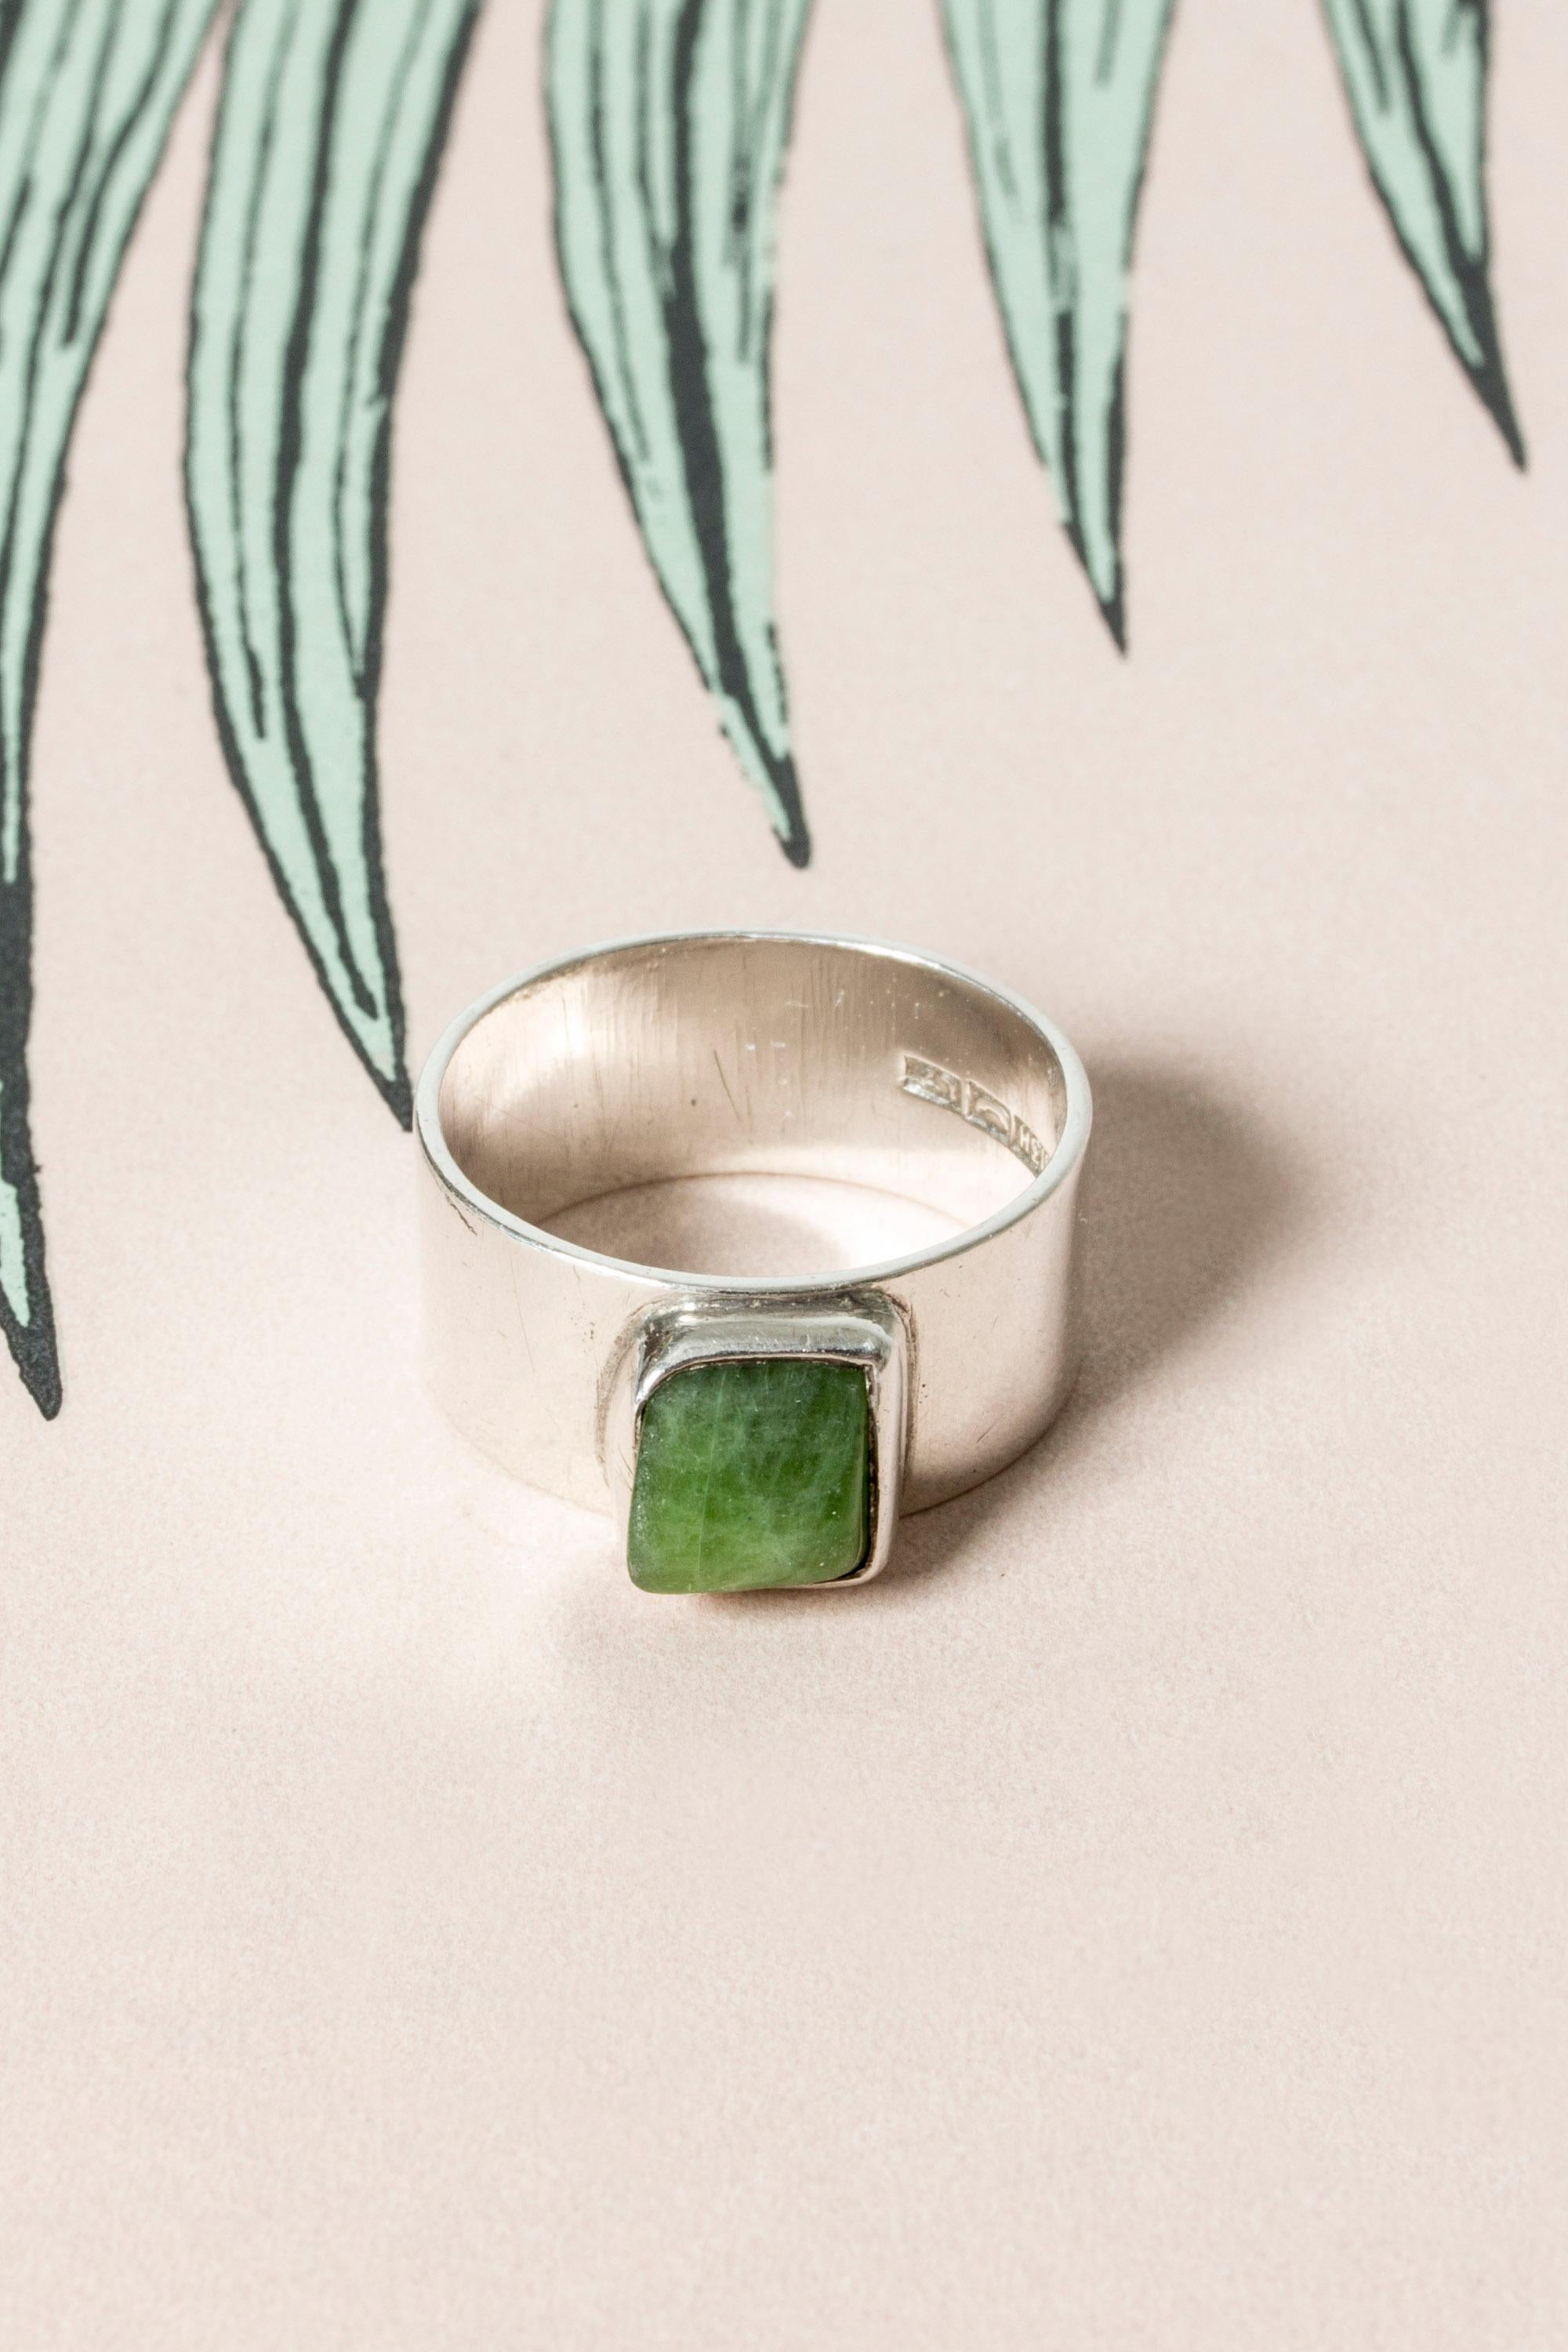 Bague en argent de style moderniste finlandais, avec une aventurine de forme organique. Belle couleur verte, une bague préférée à porter tous les jours.